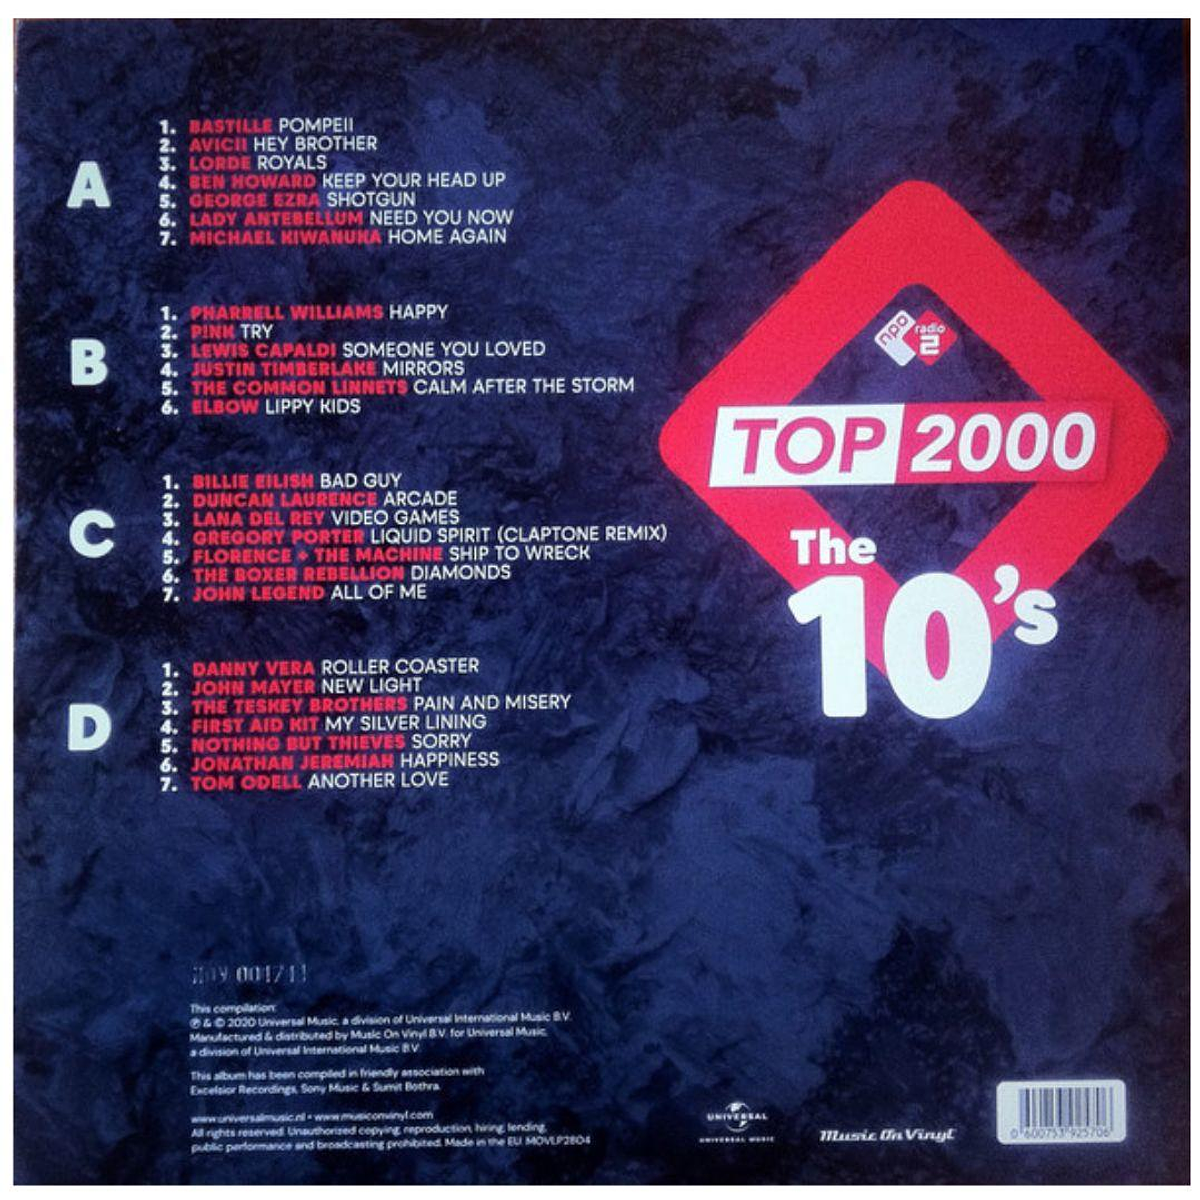 Stream AmandaBeloto, Listen to Pop Nostalgia, Pop Internacional Anos 2000